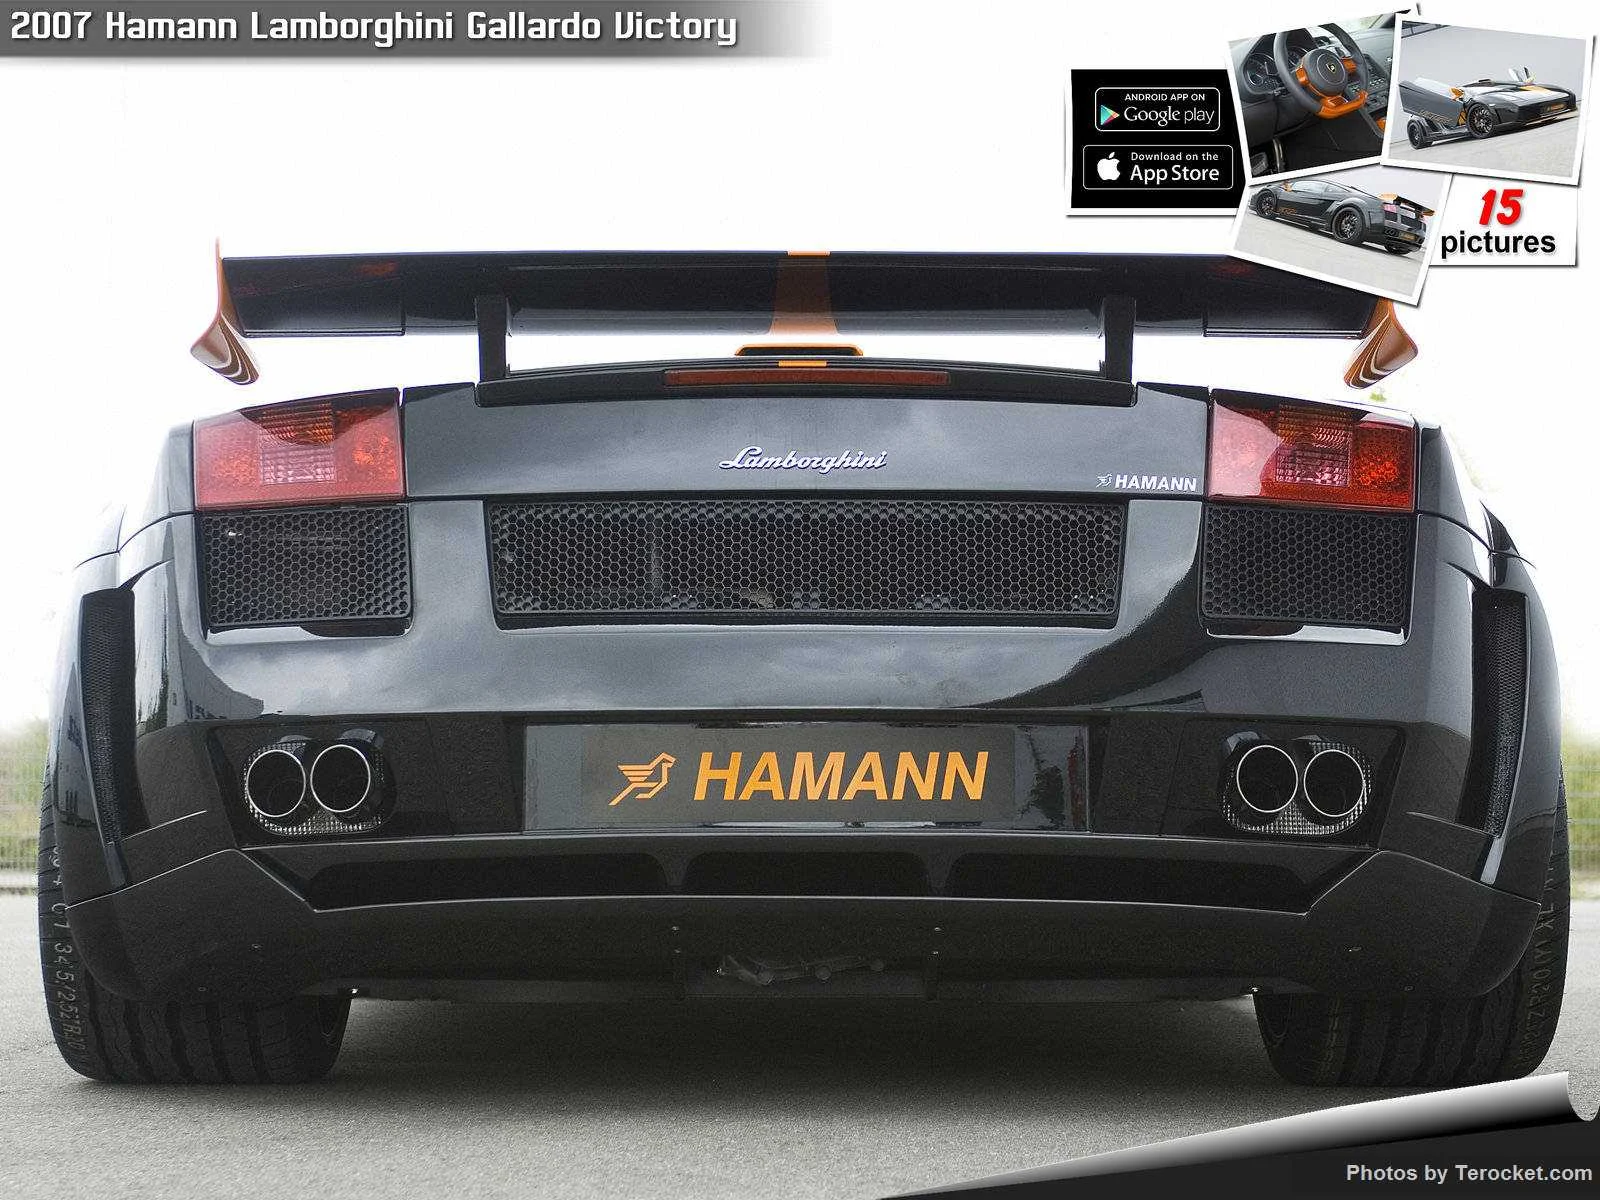 Hình ảnh xe ô tô Hamann Lamborghini Gallardo Victory 2007 & nội ngoại thất